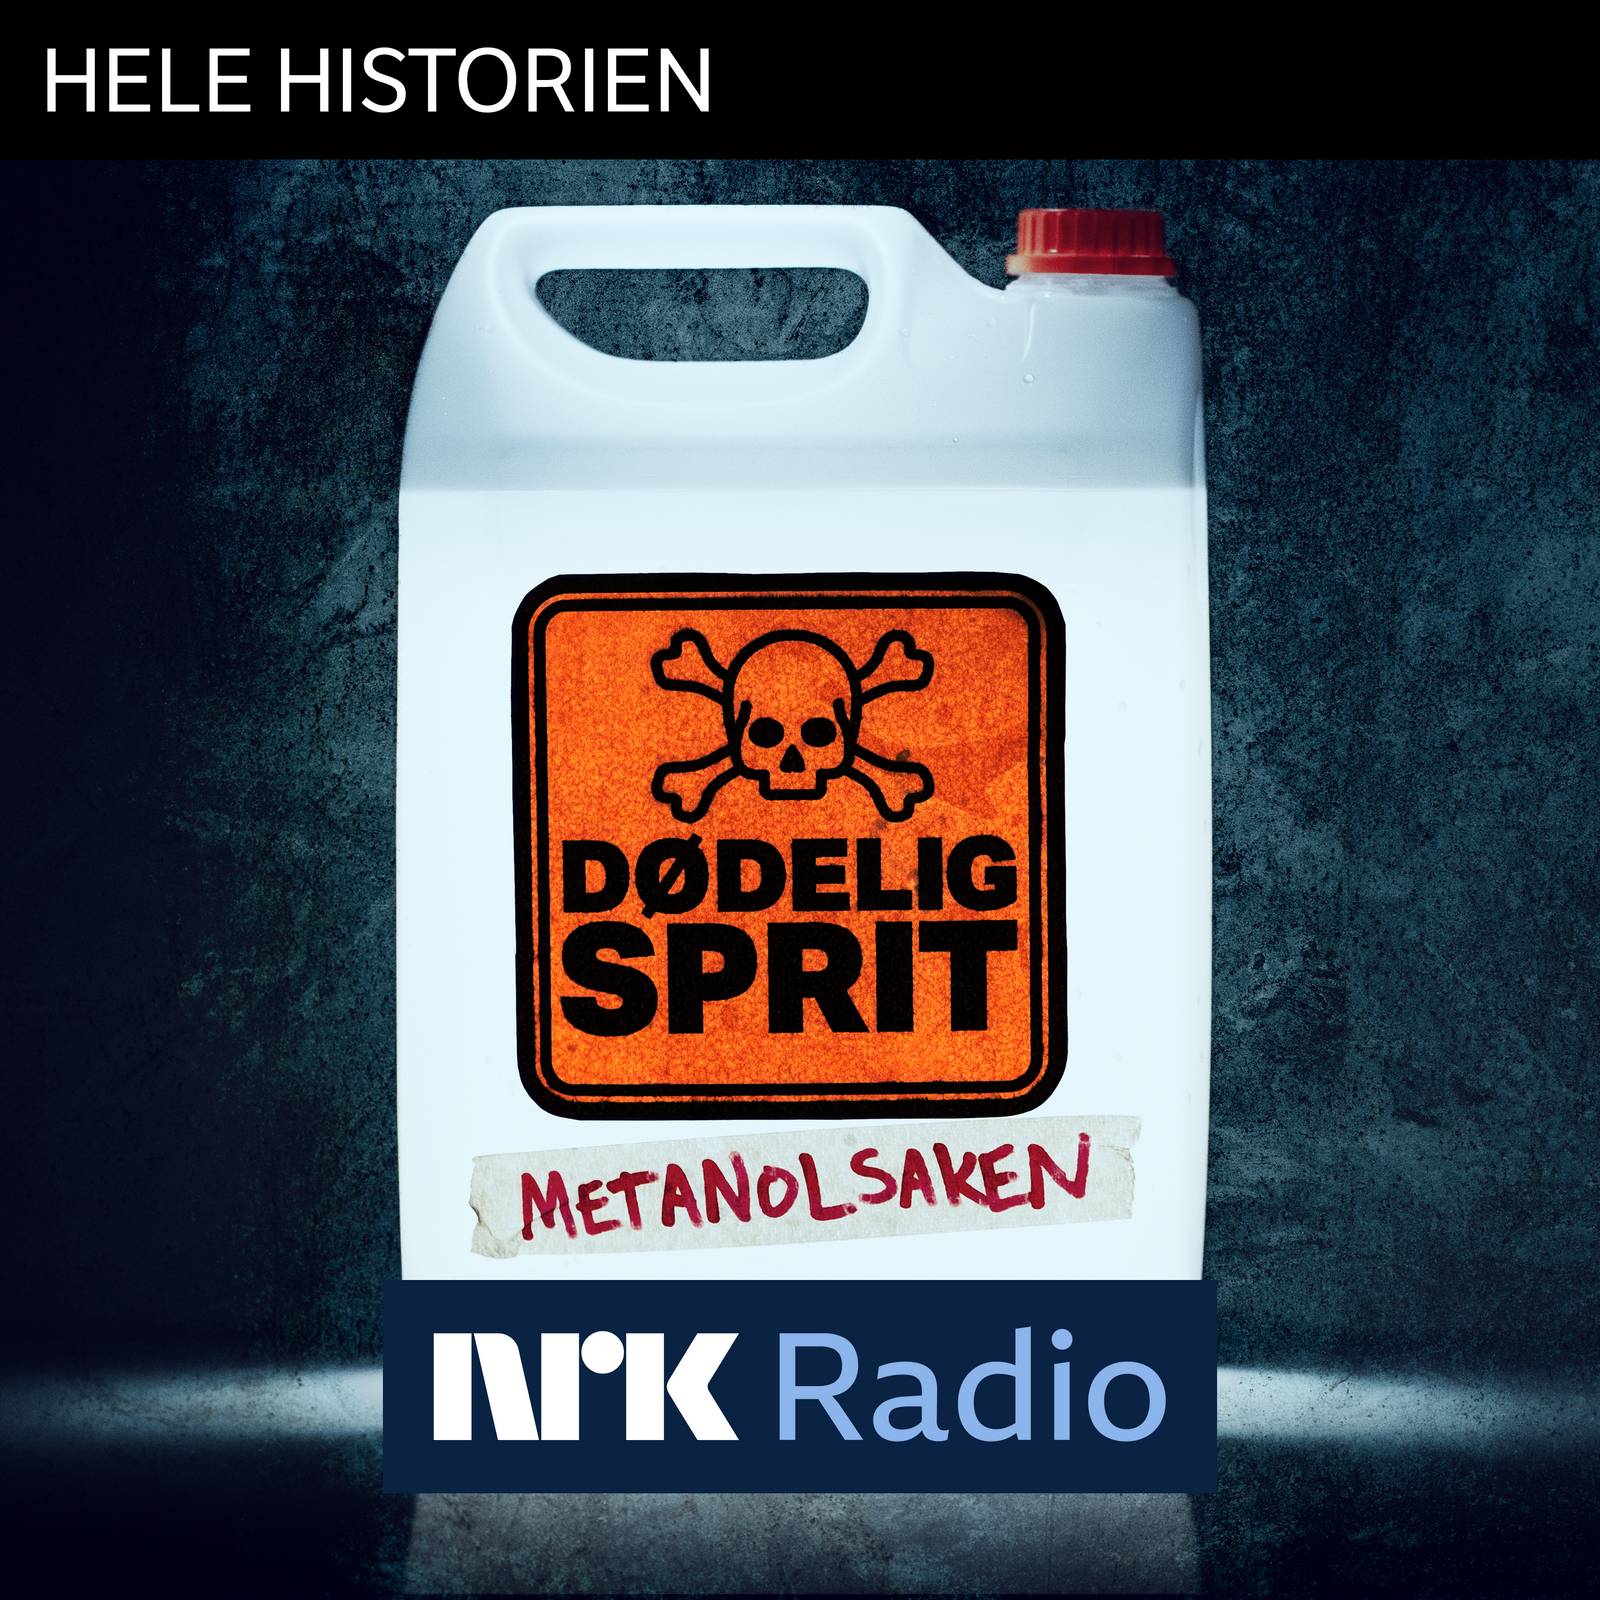 I NRK Radio: Dødelig sprit - metanolsaken